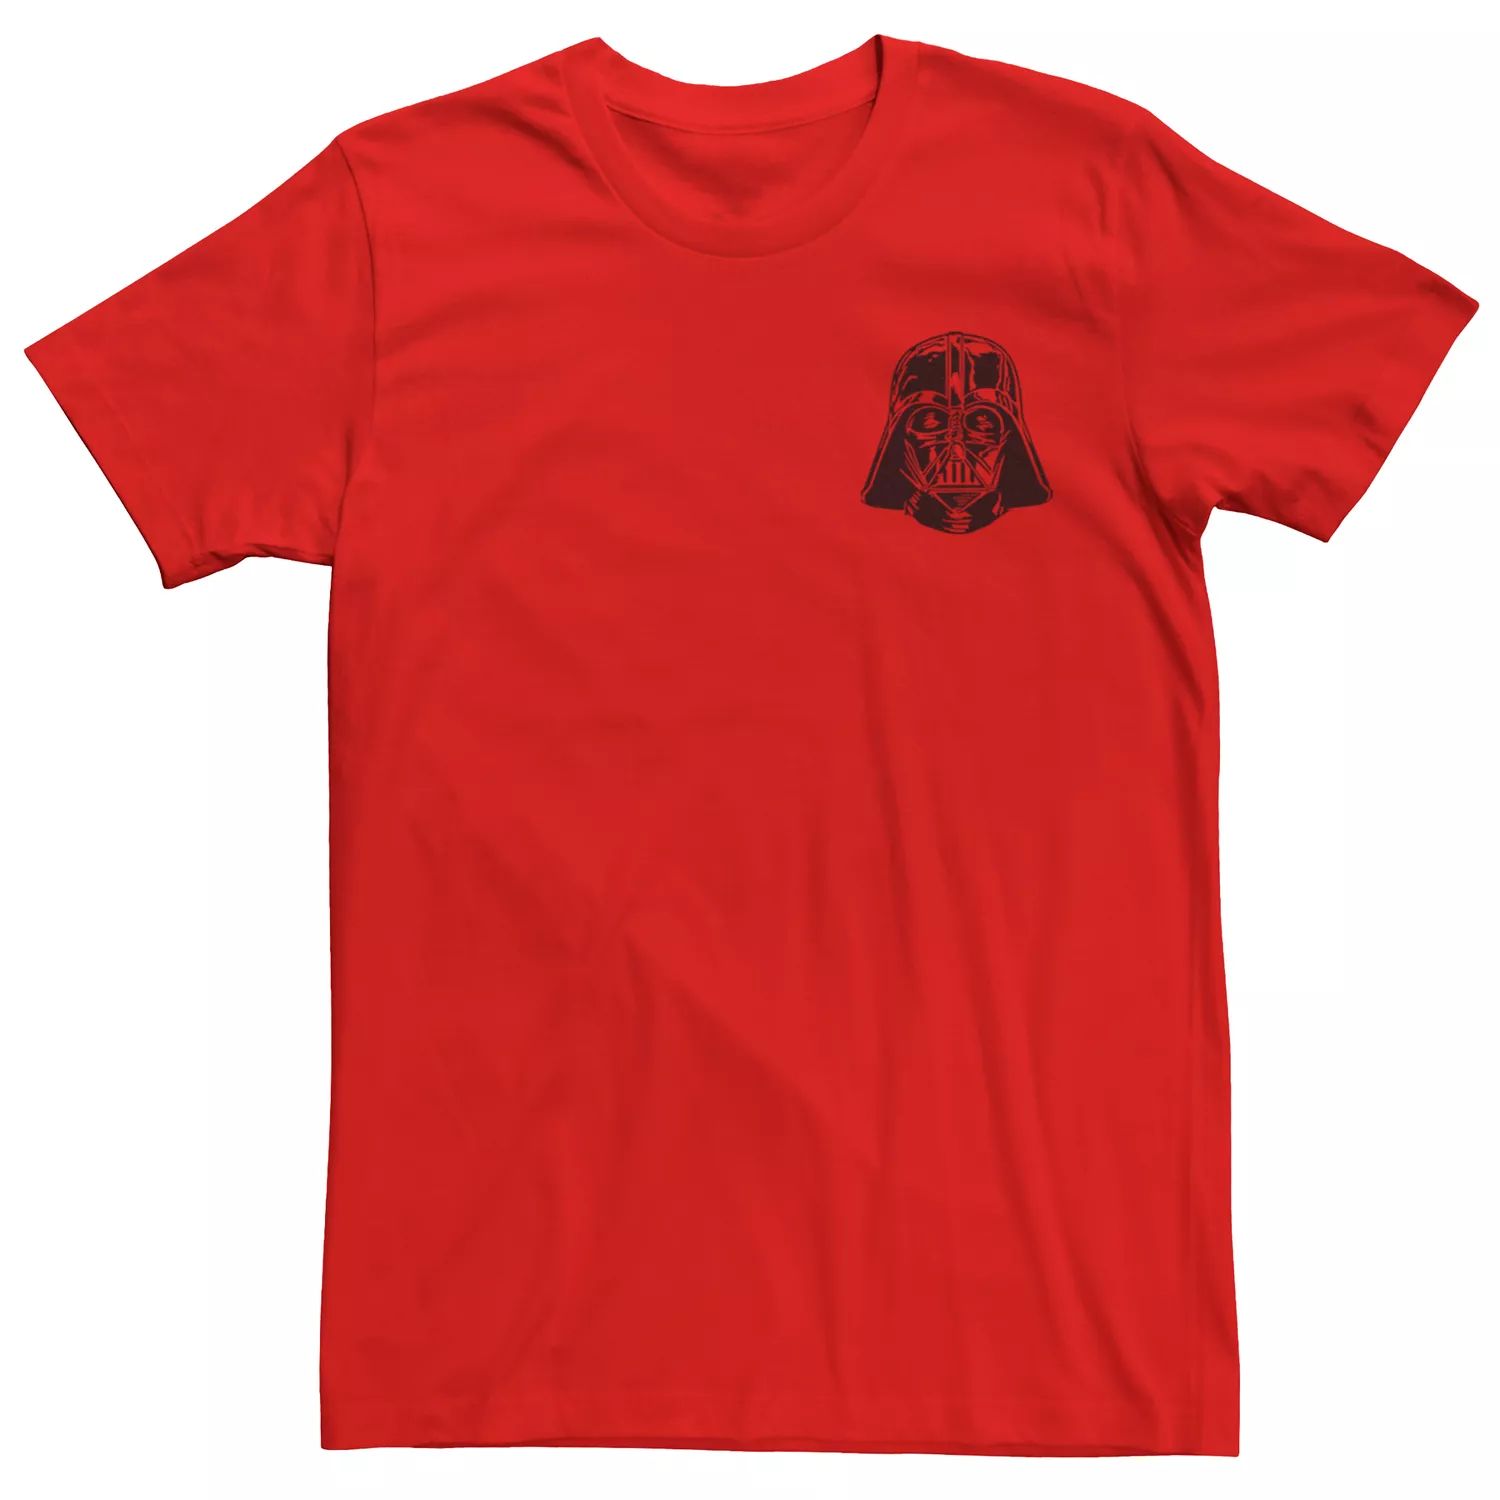 Мужская футболка с карманом и шлемом Дарта Вейдера «Звездные войны», Красная Licensed Character, красный мужская футболка со звездами и шлемом дарта вейдера звездные войны licensed character